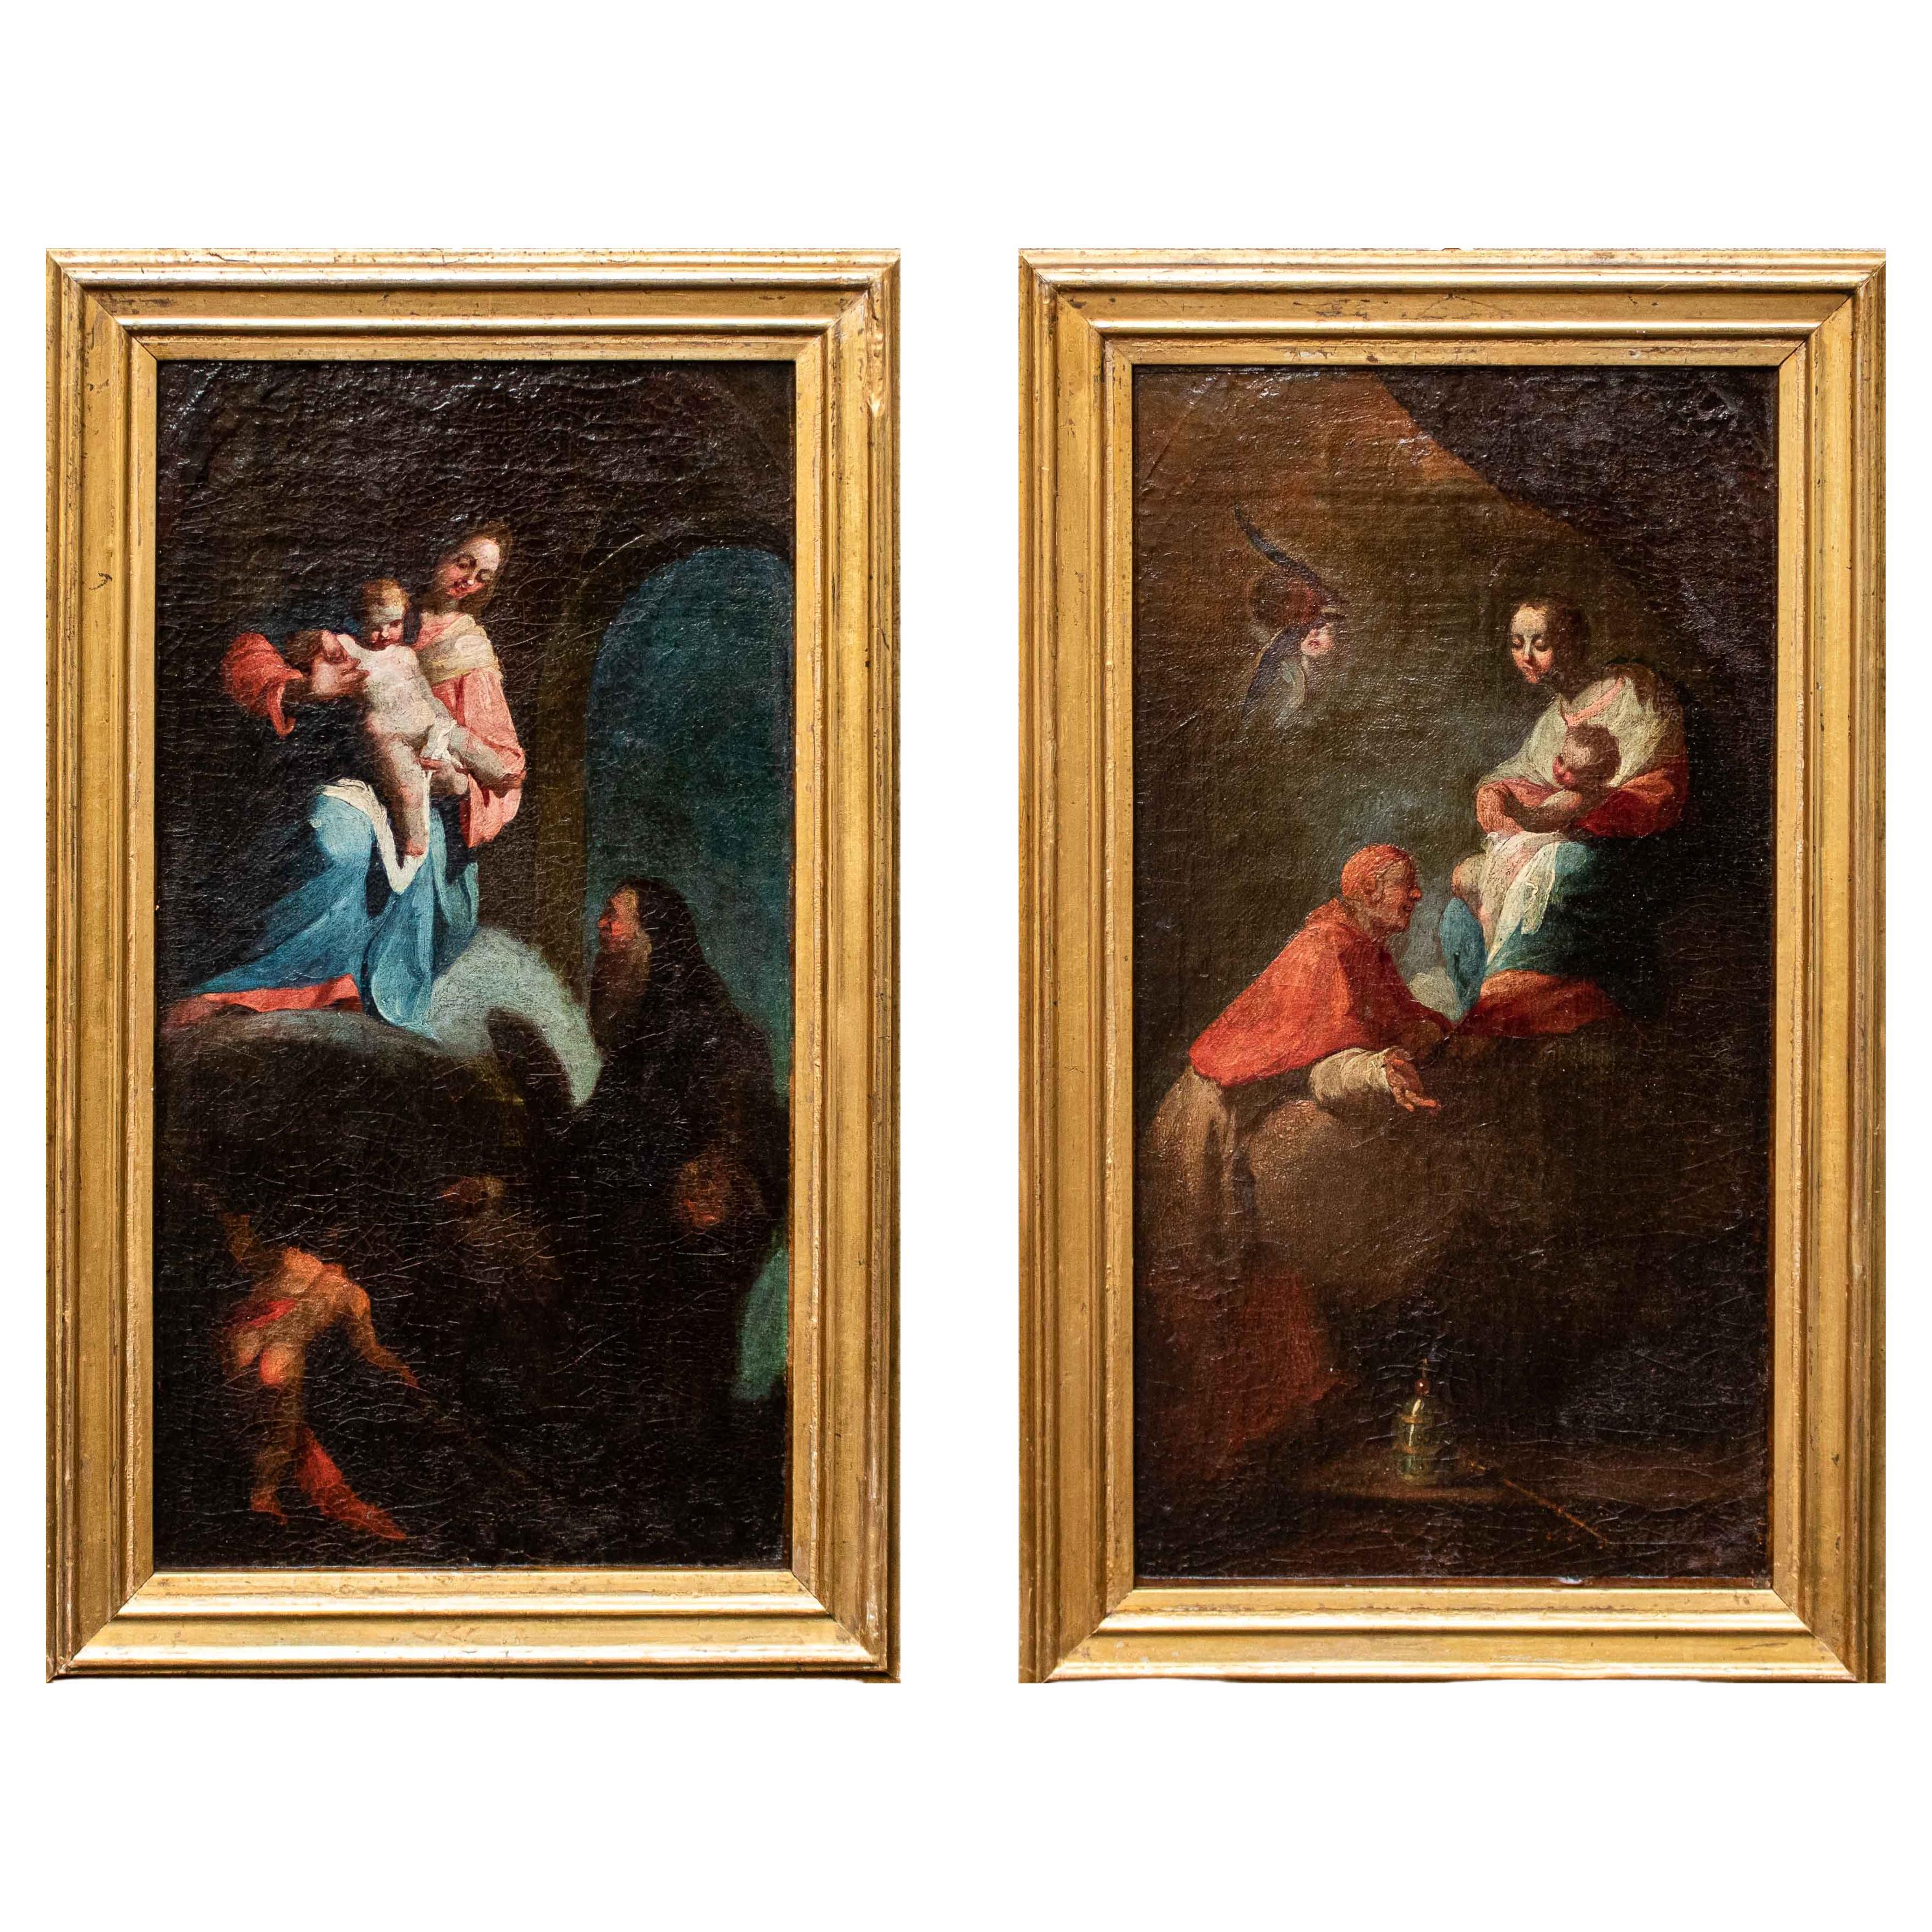 Madonna with Child Adored by Two Saints, Huile sur toile du 18ème siècle